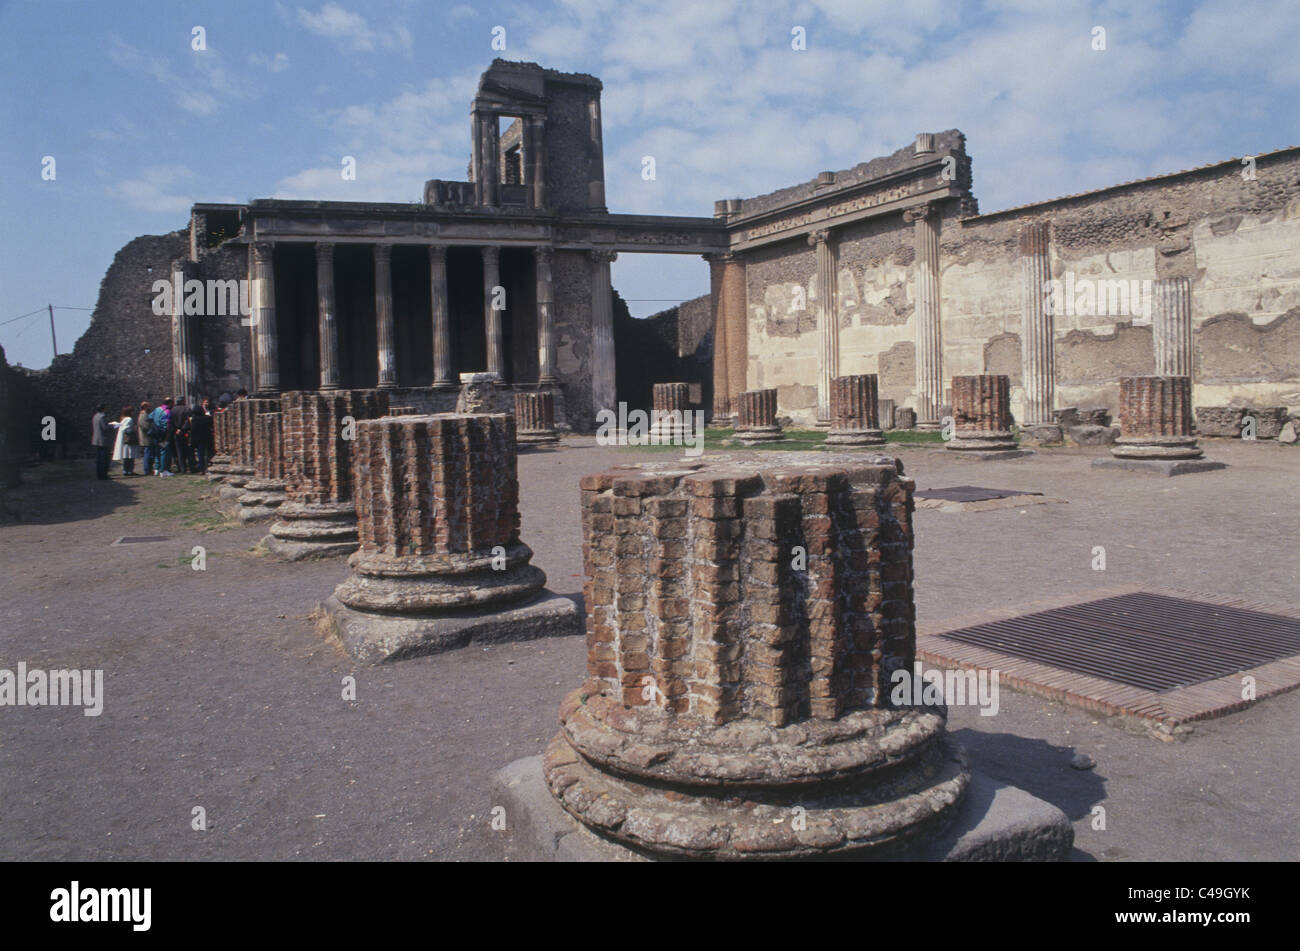 Photographie d'un ancien temple romain en Italie Banque D'Images